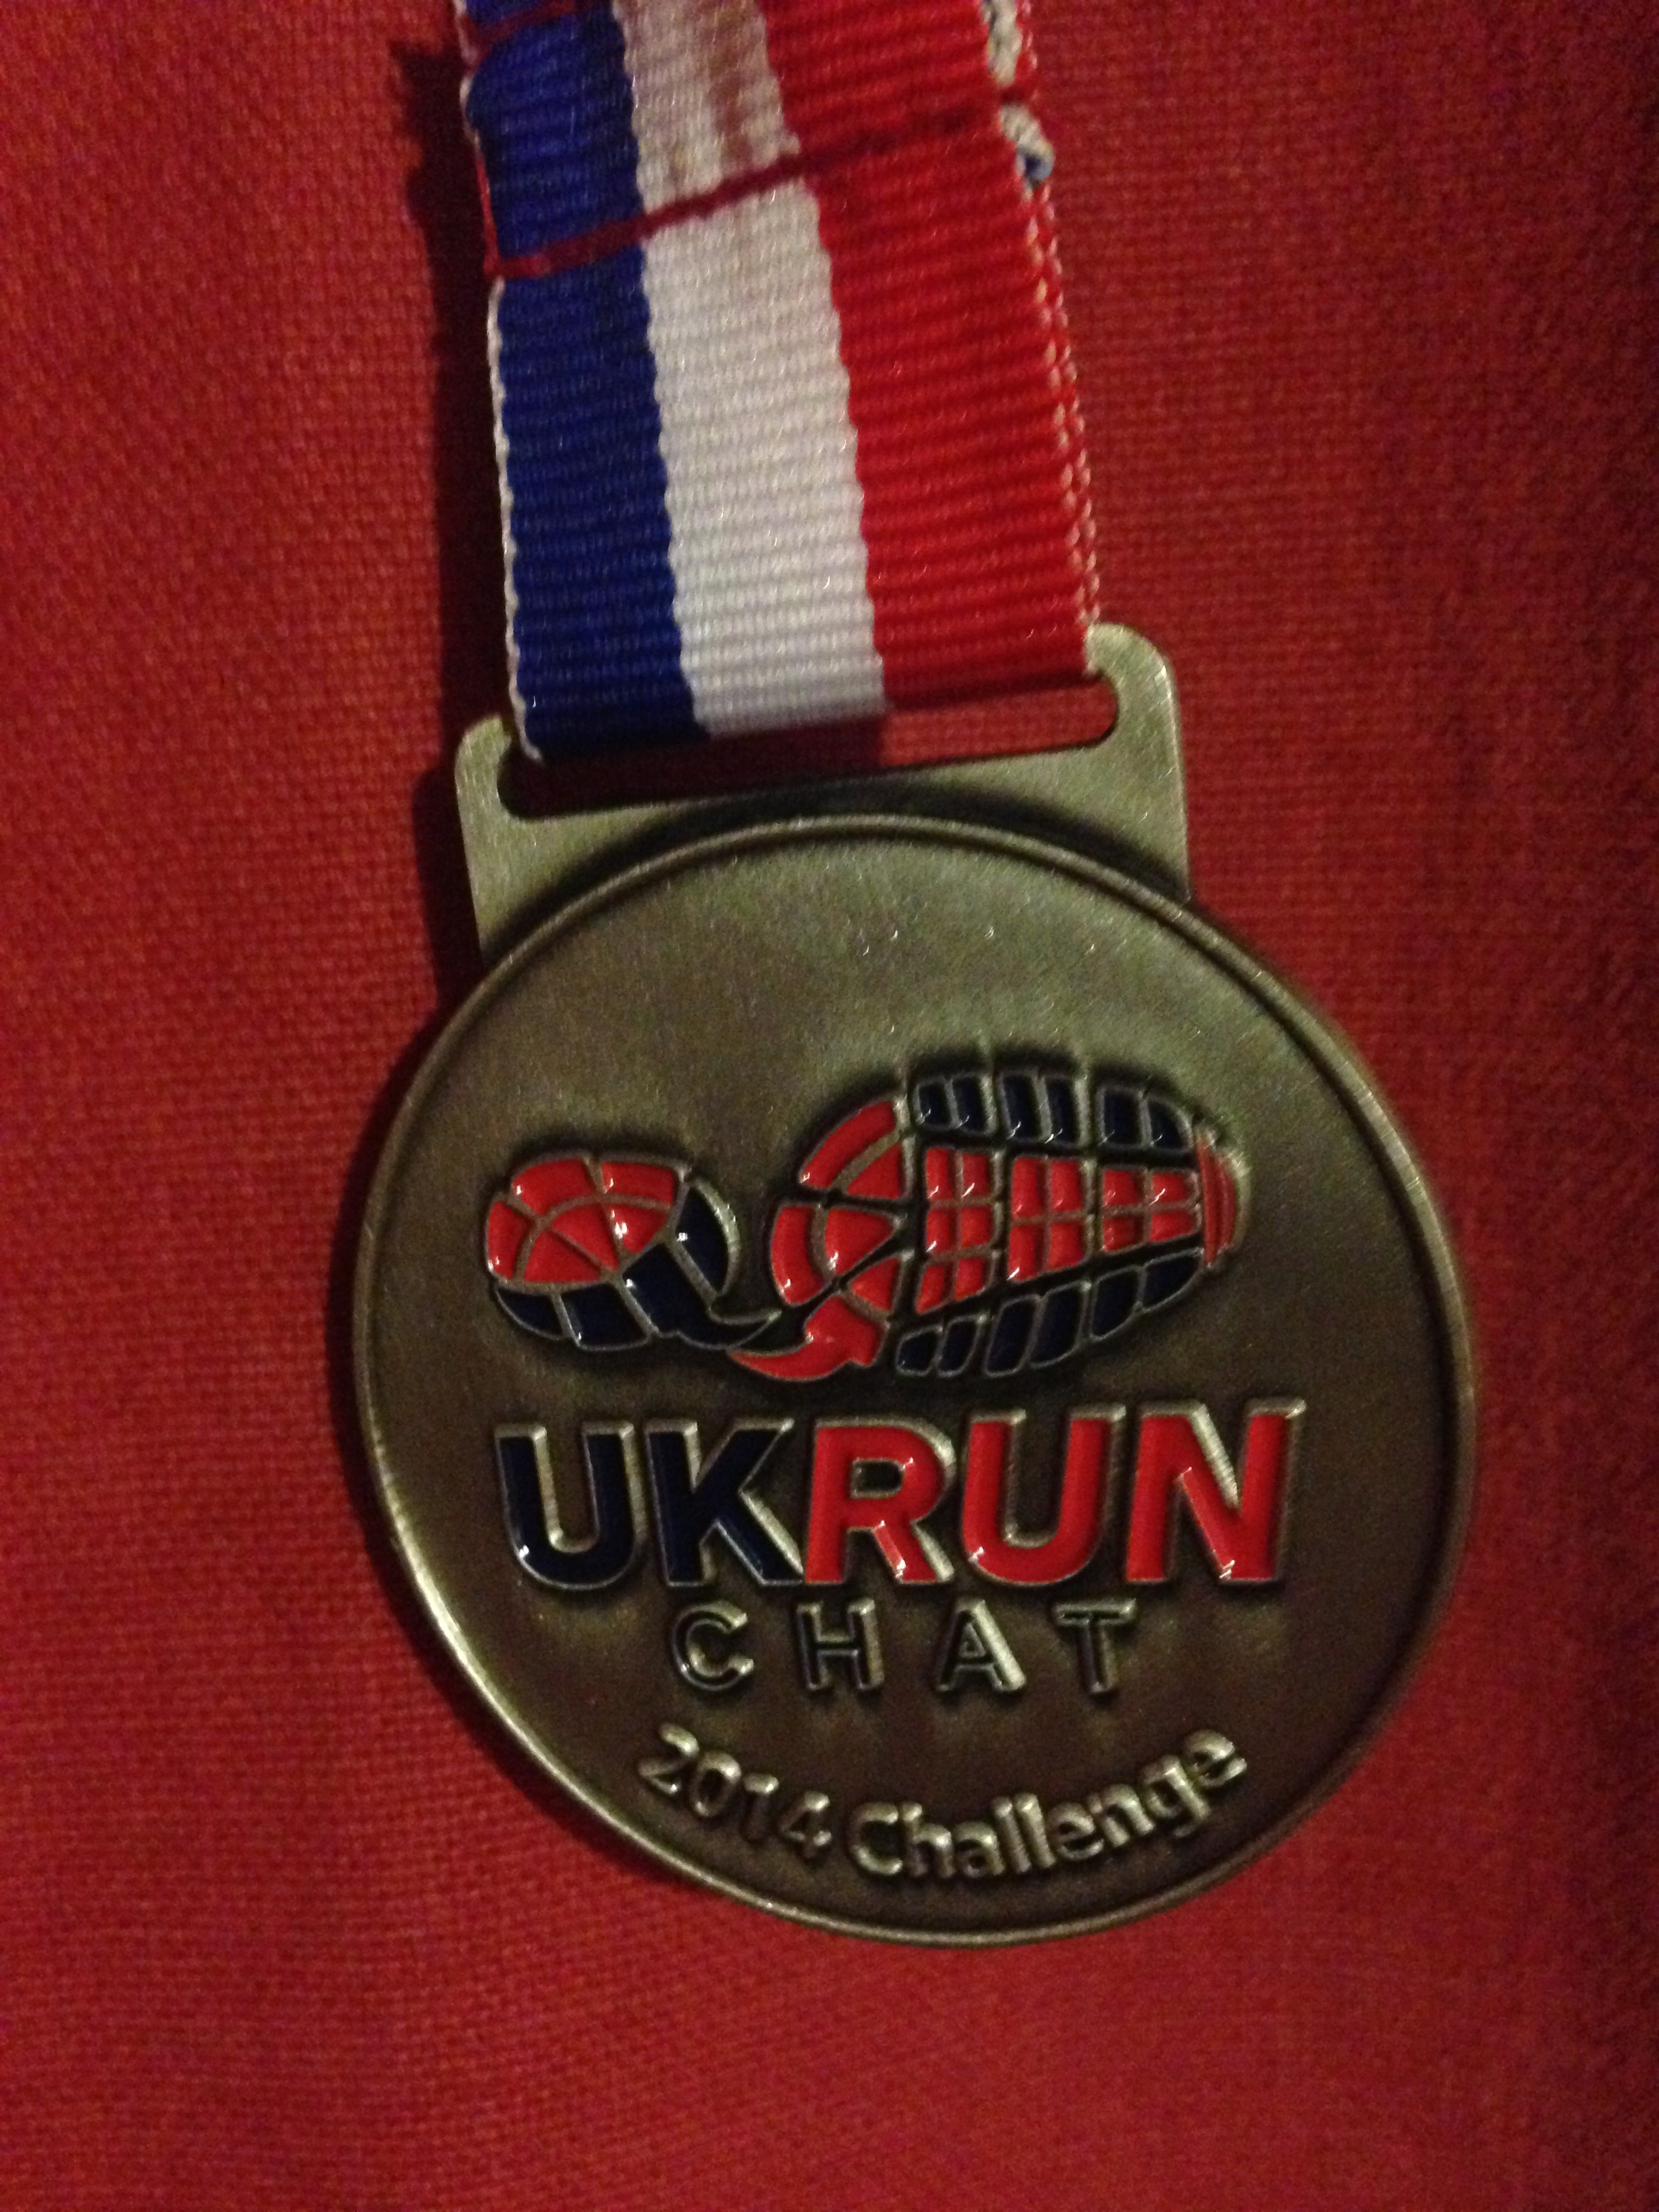 UKRunchat medal 10k run